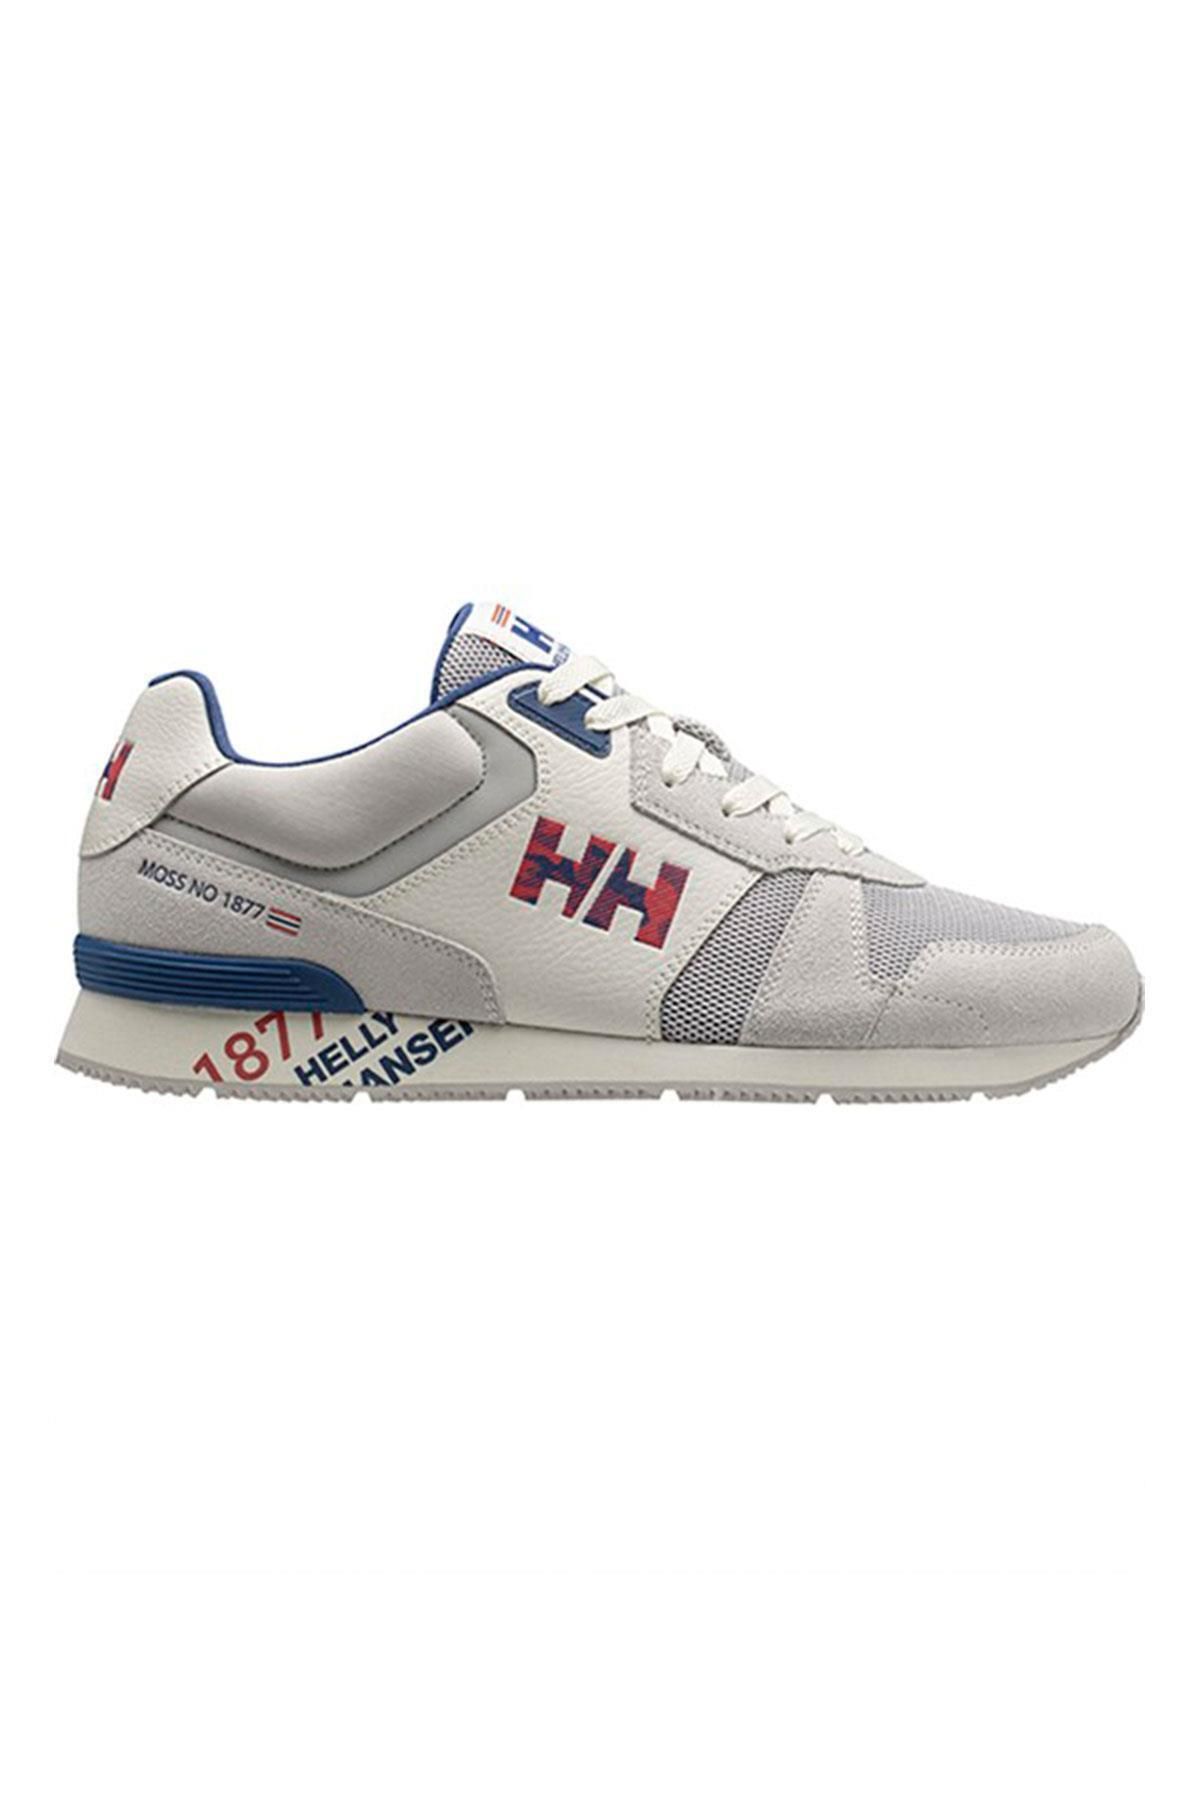 Helly Hansen Hha.11718 - Anakin Leather Günlük Spor Ayakkabı